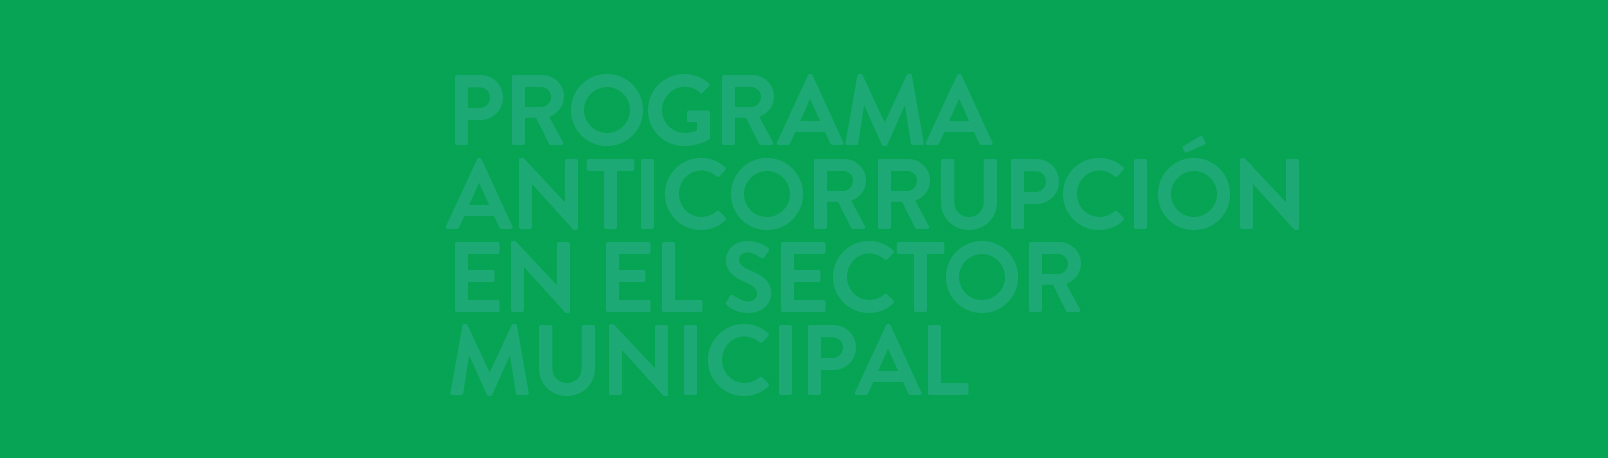 Programa Anticorrupción en el Sector Municipal